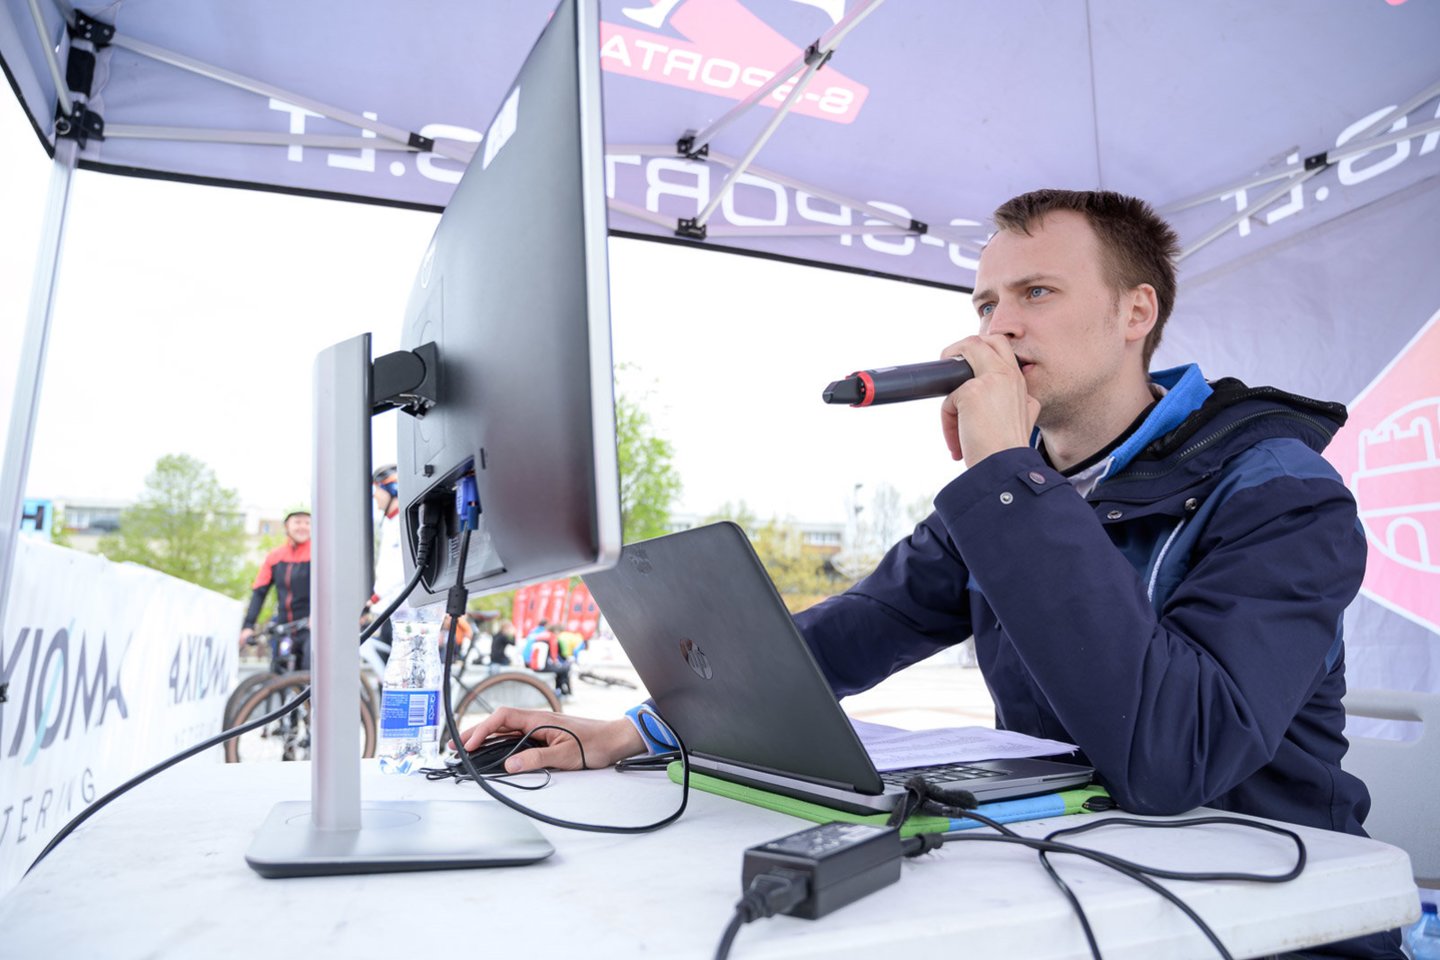  Ignalinoje Europos orientavimosi sporto kalnų dviračiais čempionate N. Lukošius iškovojo bronzą<br> organizatorių nuotr.